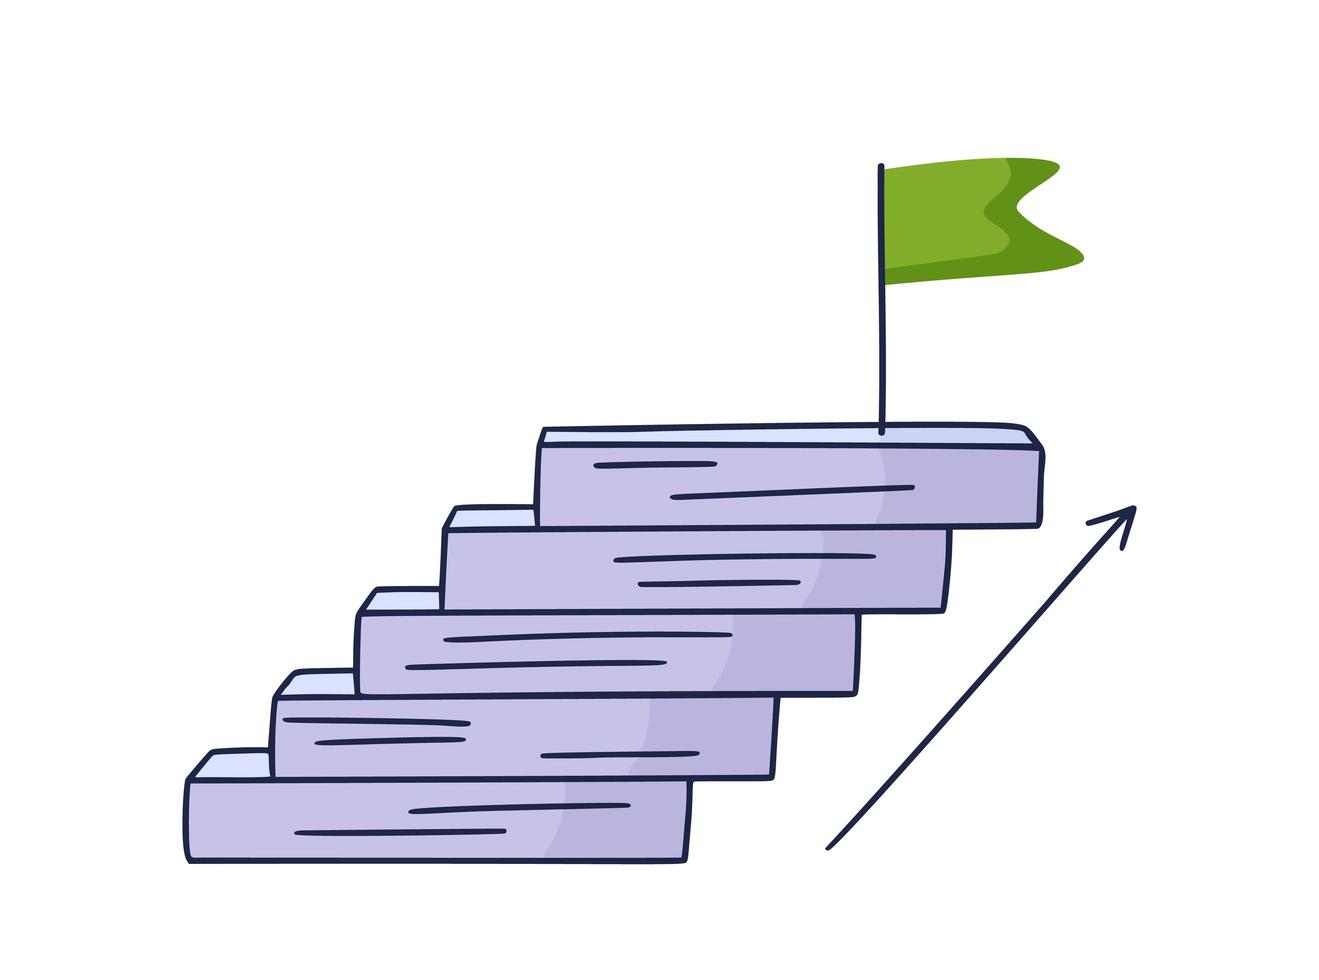 se acerca a la bandera. Ilustración de vector doodle dibujado a mano con escalones o escaleras encima del cual hay un icono de la bandera verde. el camino hacia el éxito y el logro de metas